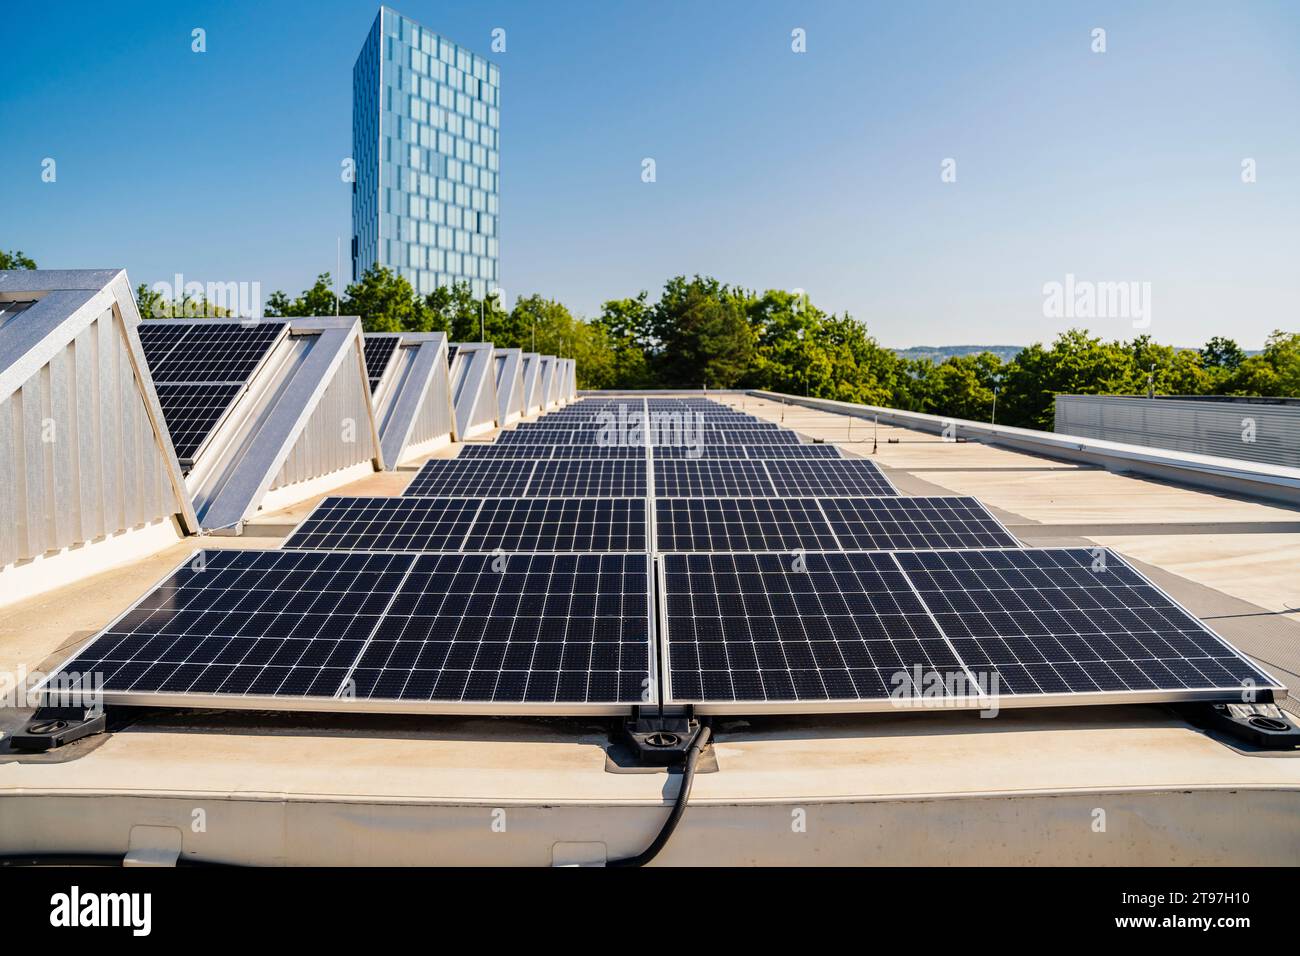 Panneaux solaires installés sur un toit, générant de l’énergie propre sous un ciel bleu clair Banque D'Images